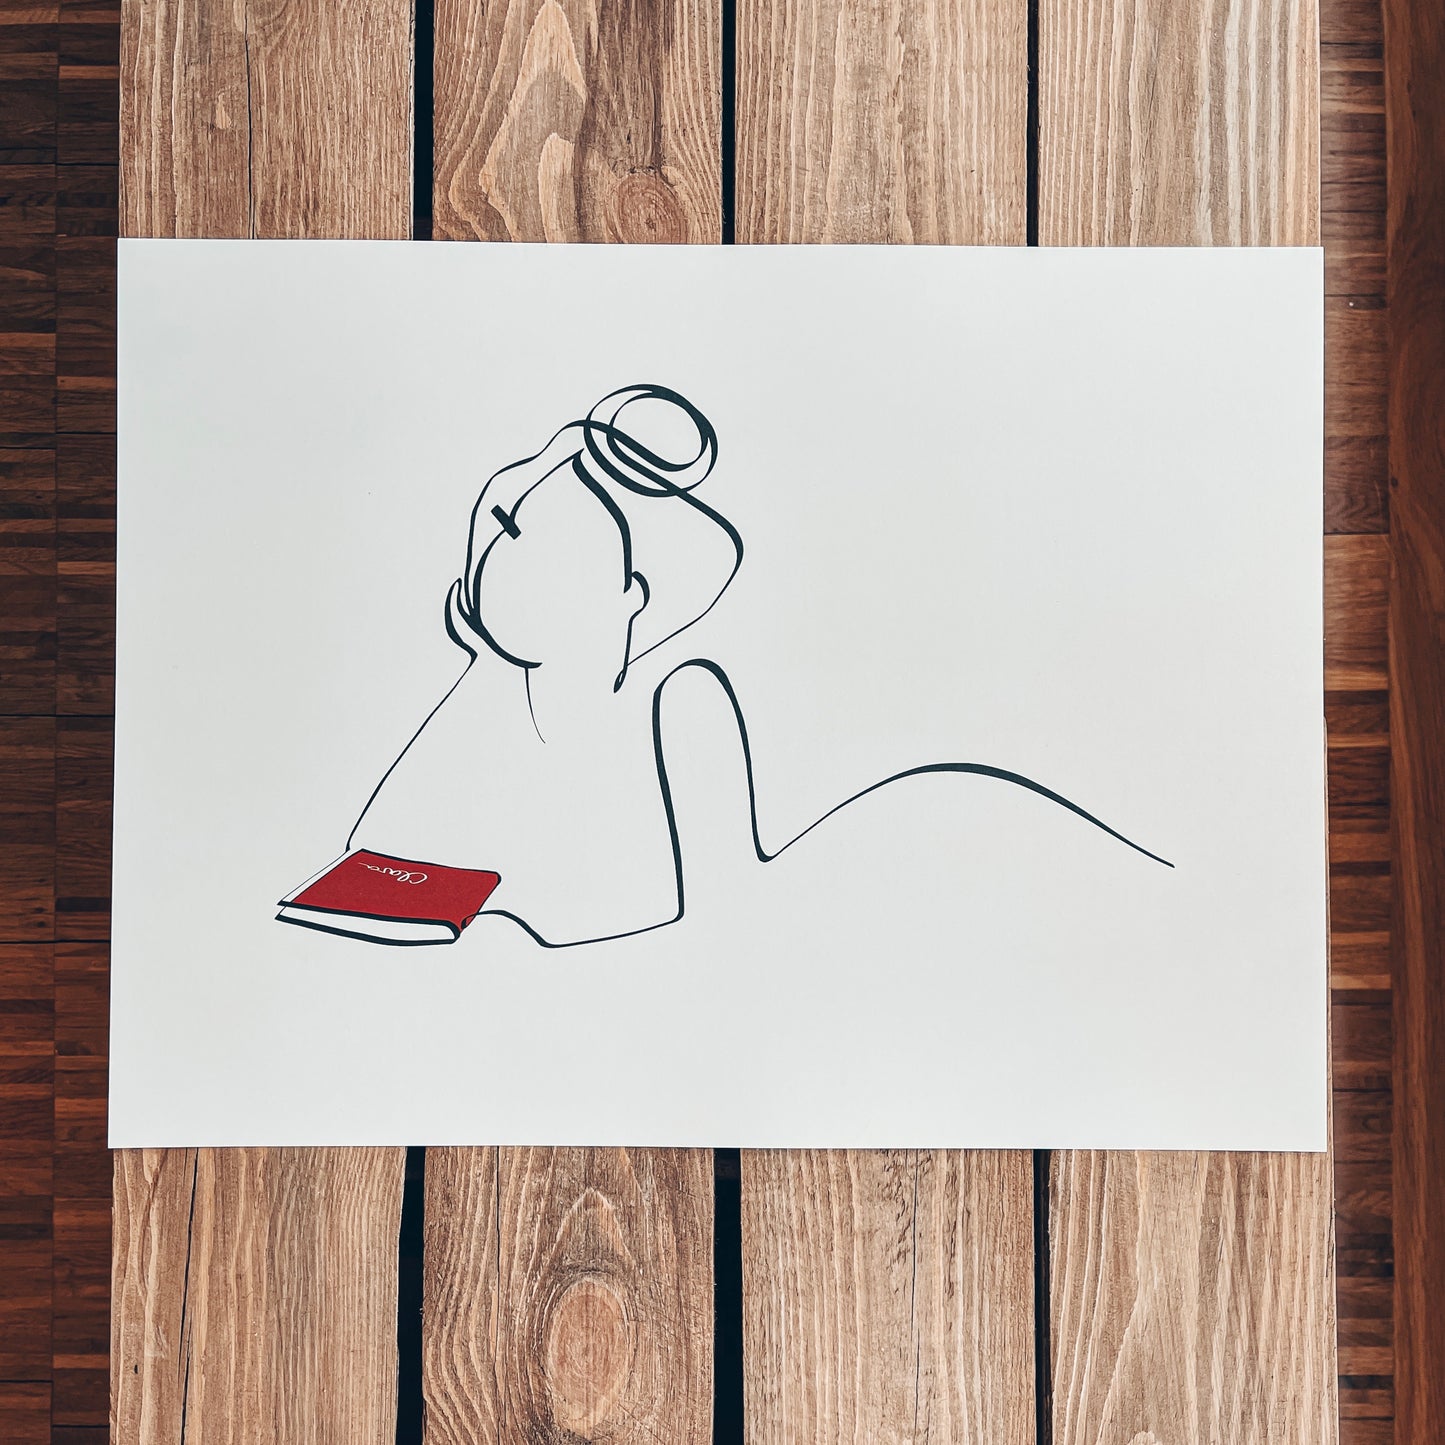 Frauen und Bücher Nr. 2-Kunstdruck-JUDITH CLARA-40x30 cm *Limited* (creme weiß) Papier 300g-one-line-art